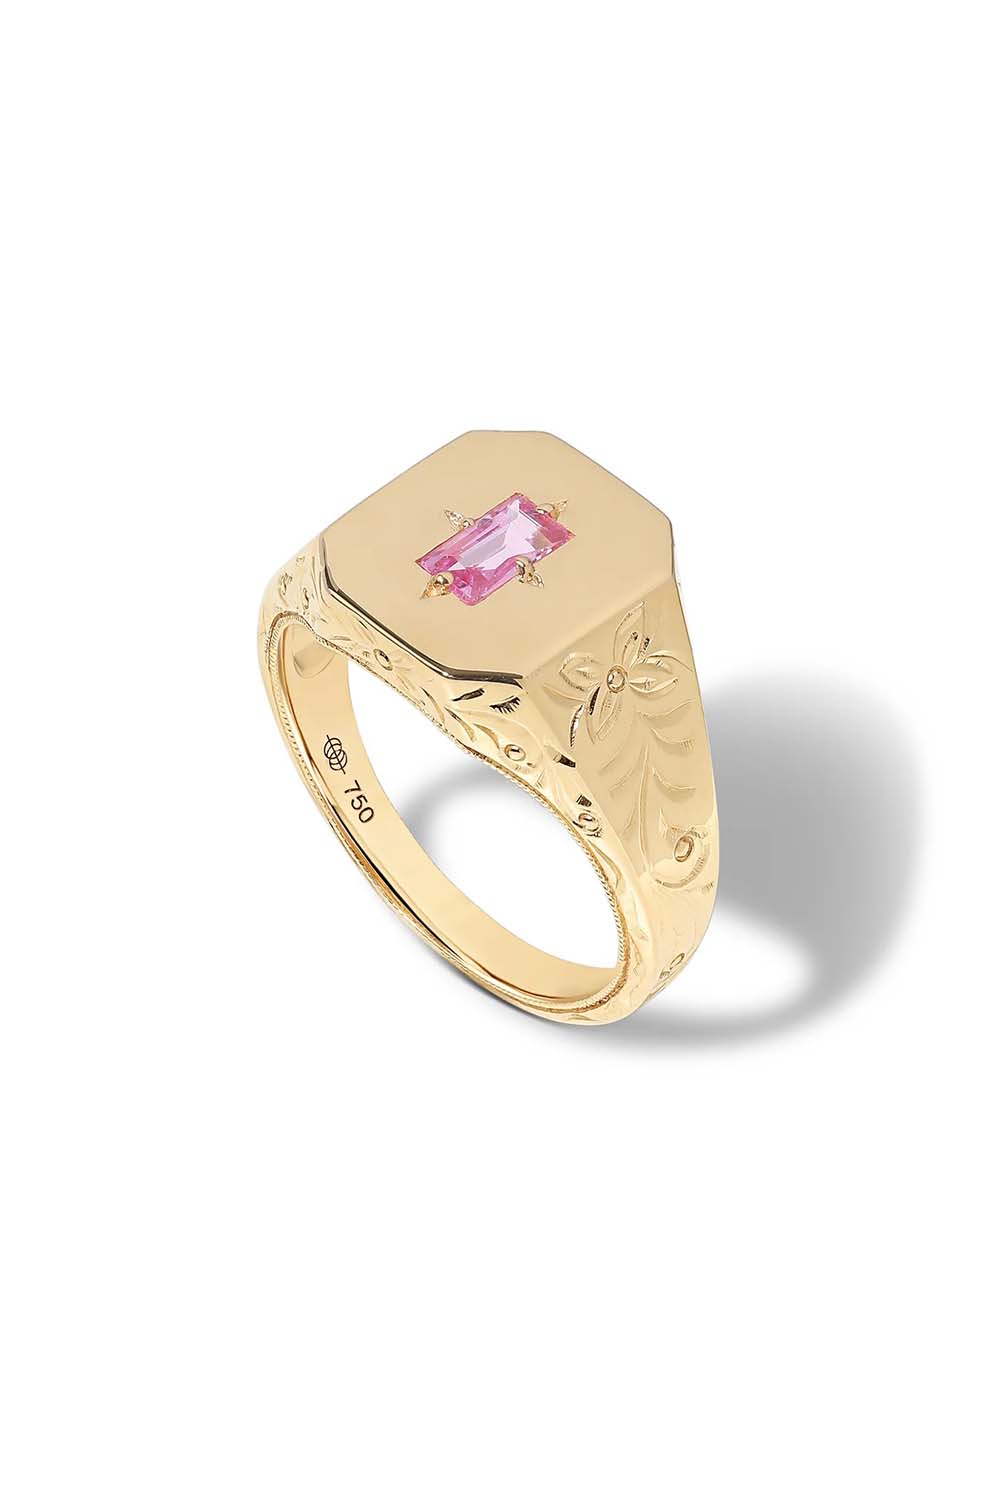 STATE PROPERTY-Pink Sapphire Spade Warisan Signet Ring-YELLOW GOLD